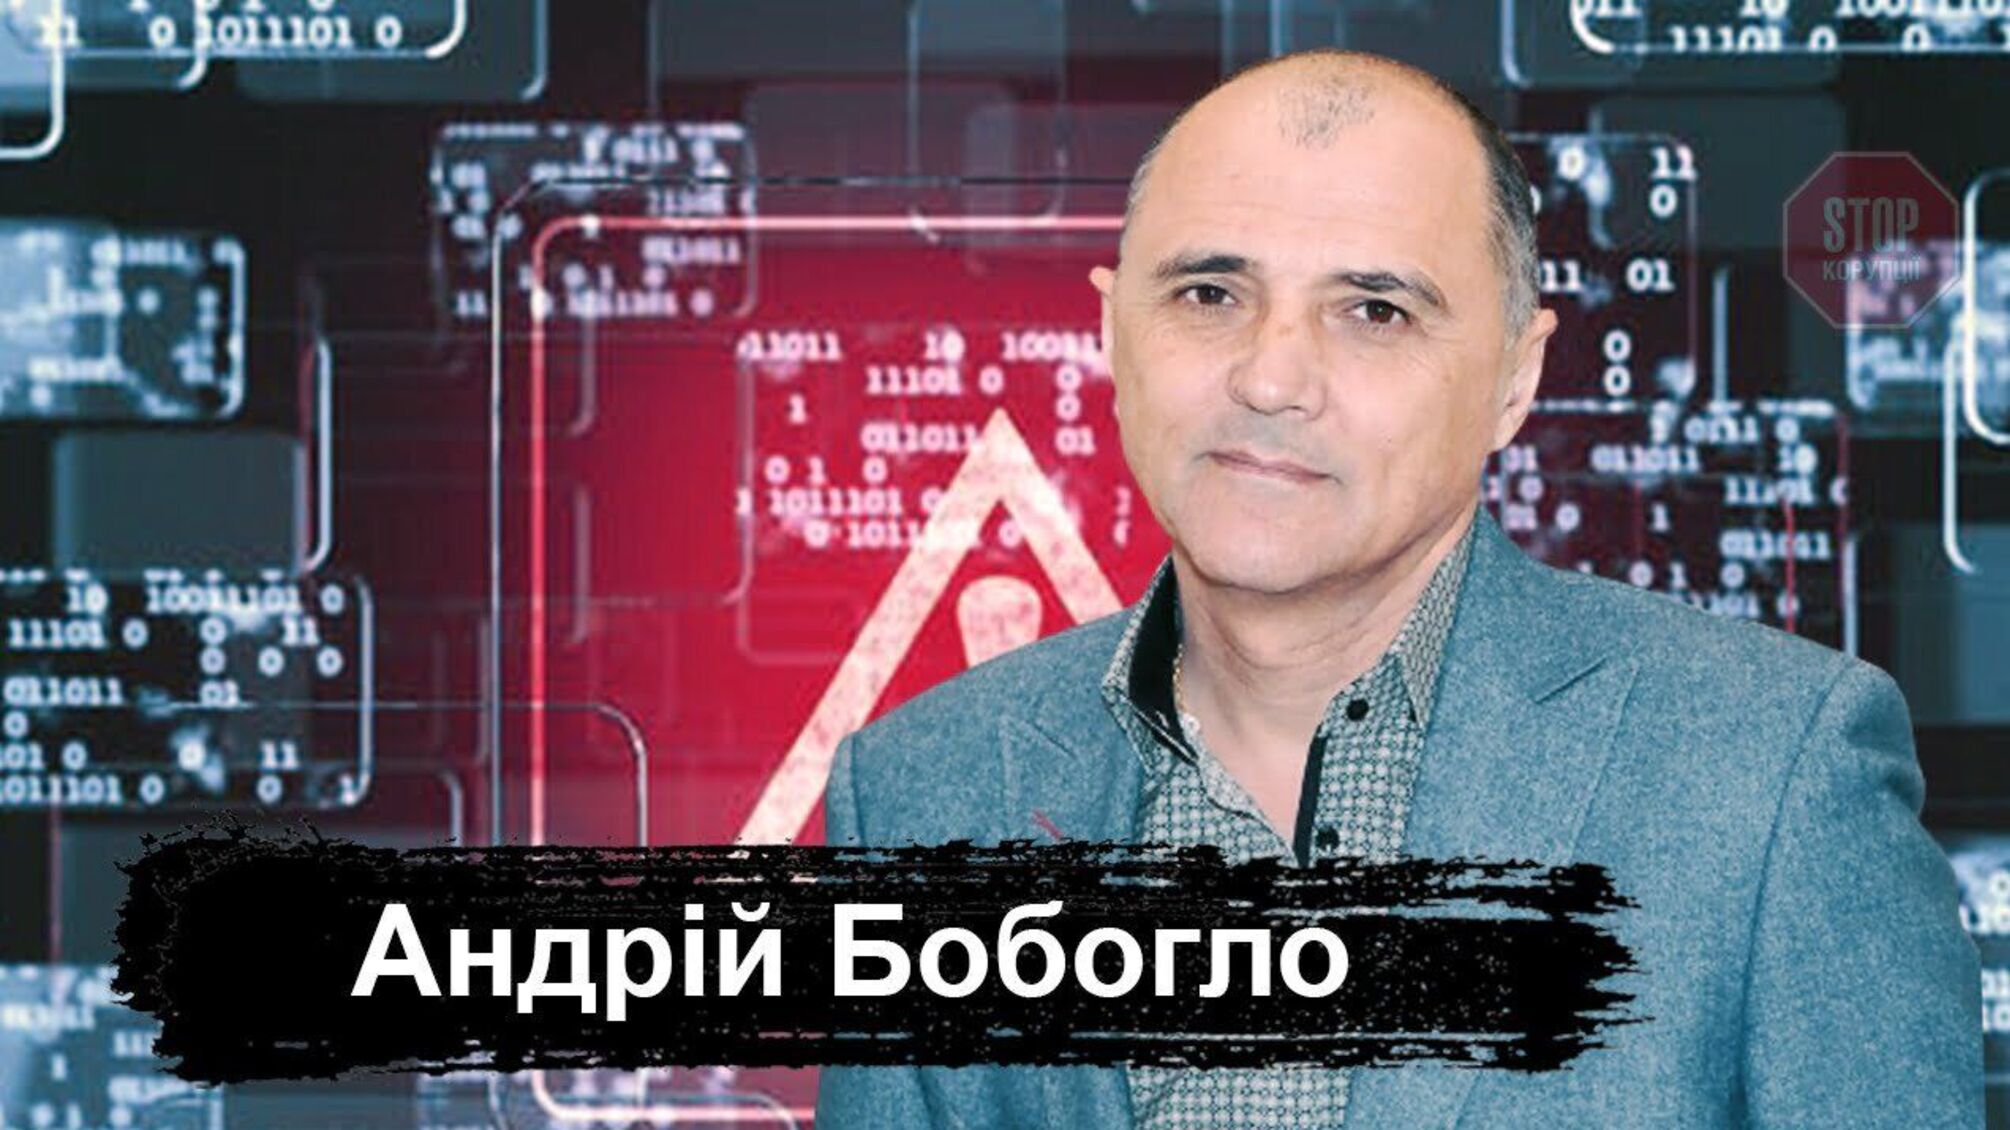 Украинского бизнесмена Бобогло очернили в СМИ - он дал официальный ответ